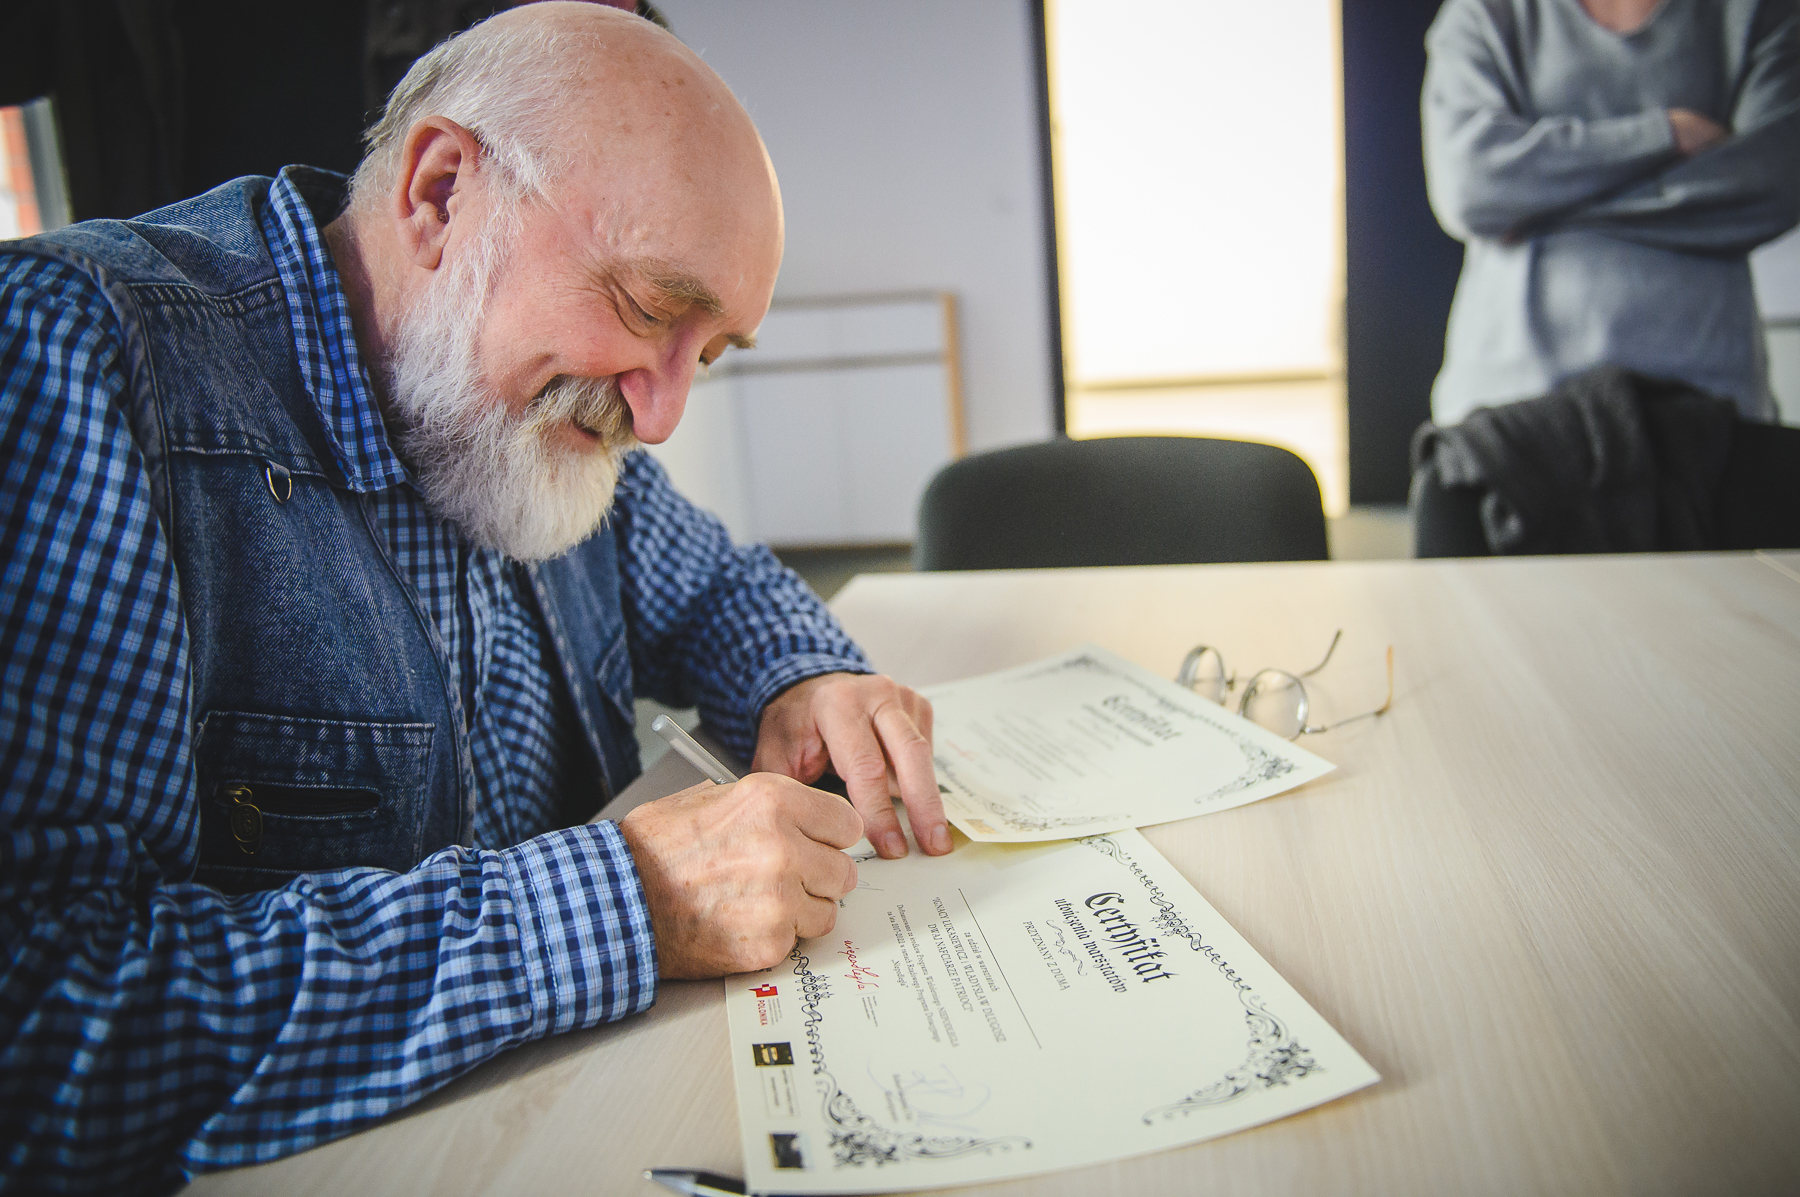 Podpisanie certyfikatów